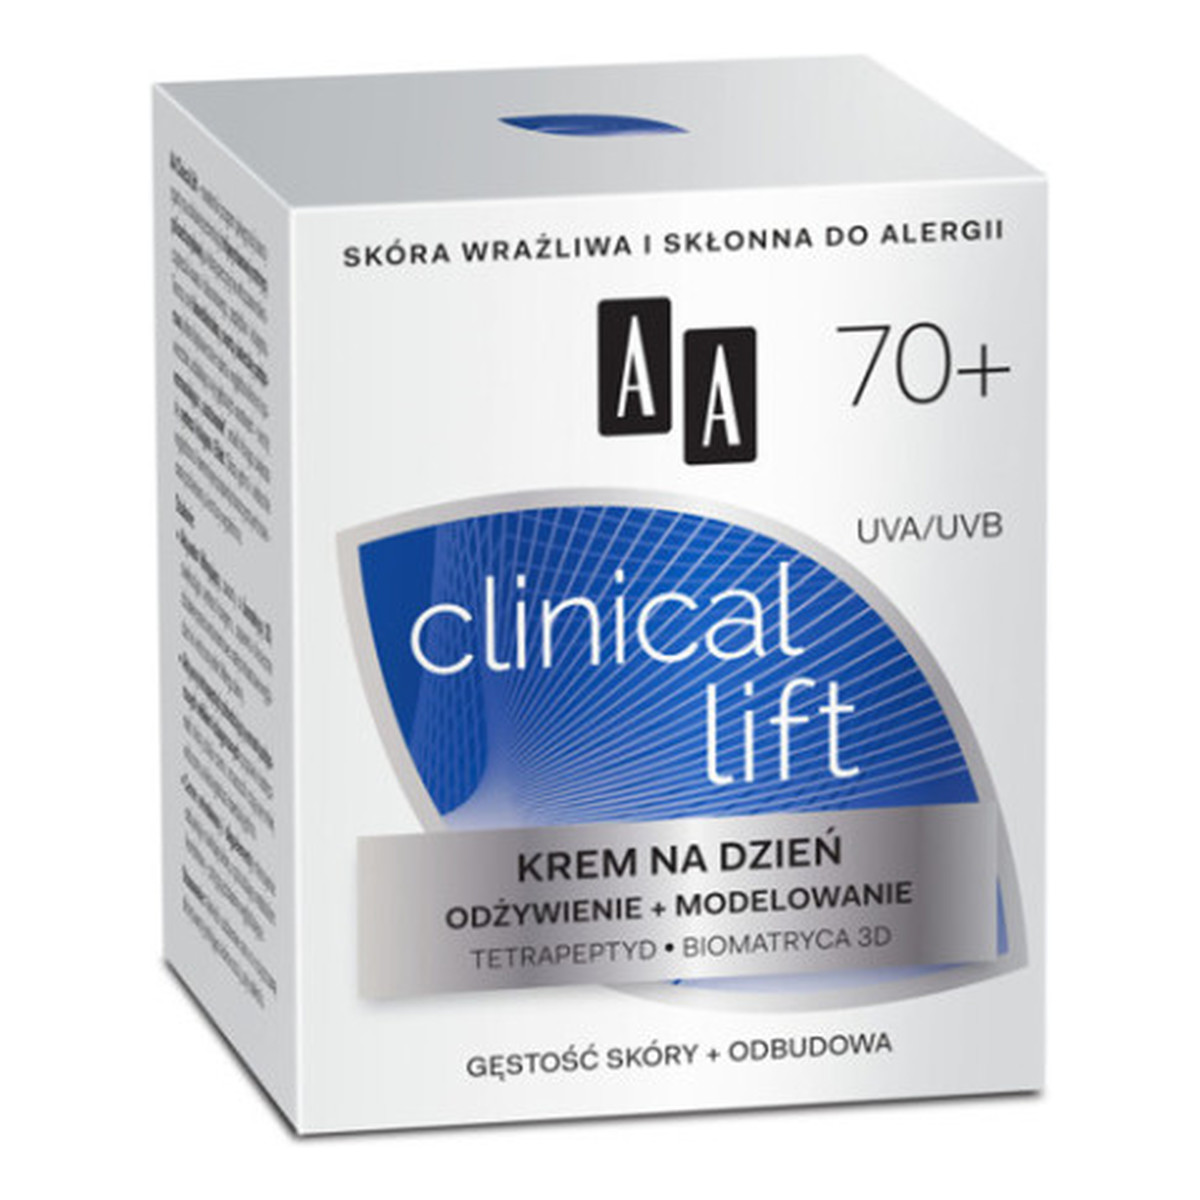 AA 70+ Clinical Lift Krem Do Twarzy Na Dzień Odżywienie i Modelowanie 50ml